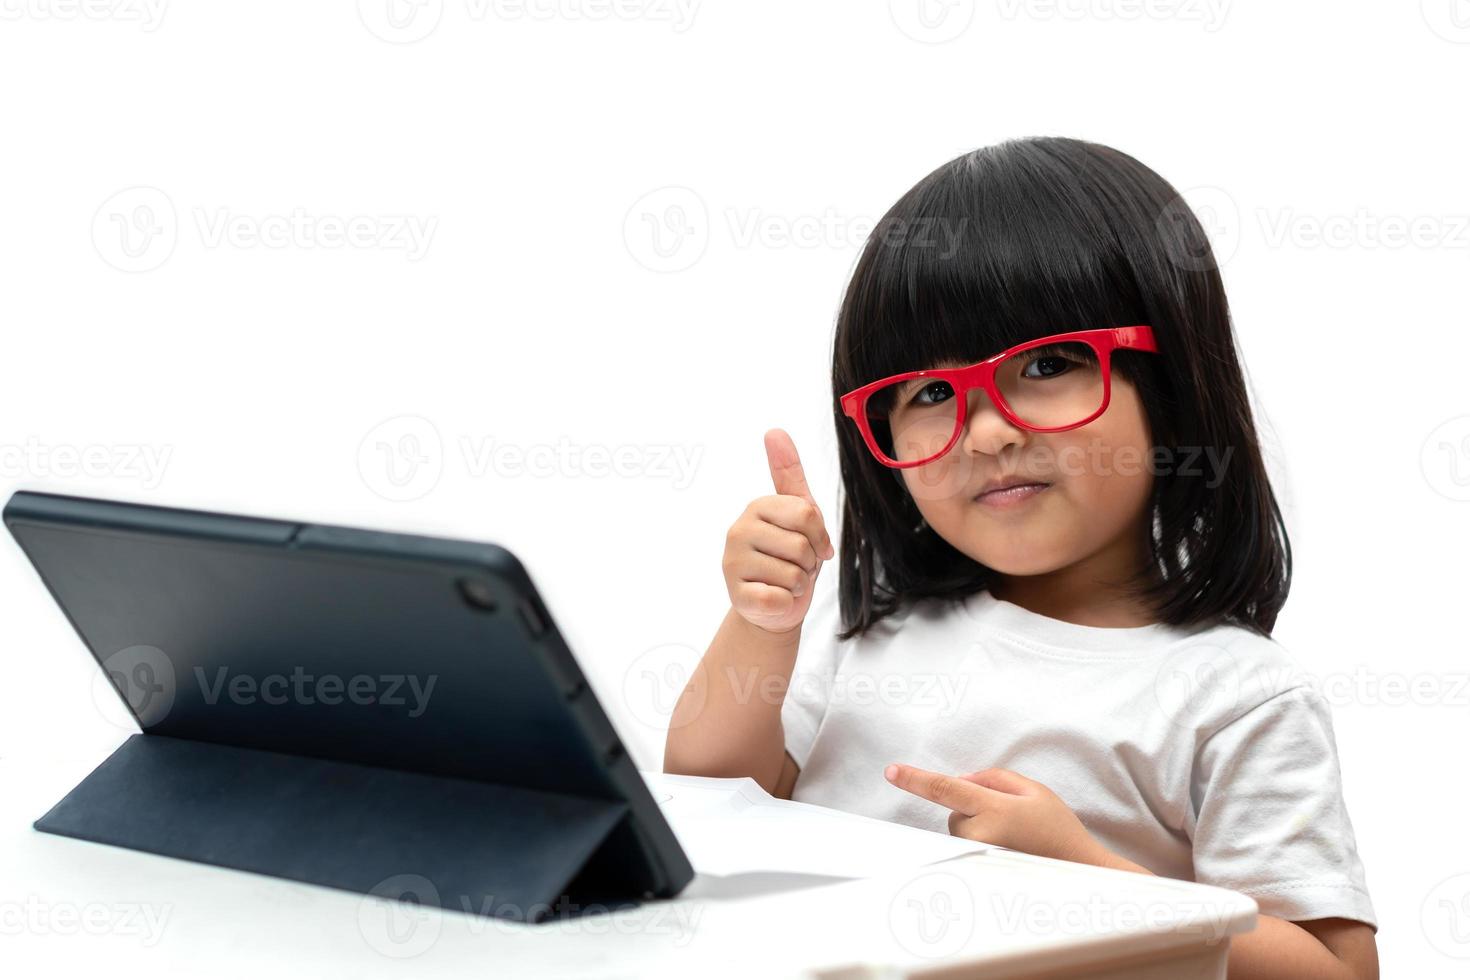 liten asiatisk förskolebarnflicka som bär röda glasögon och använder surfplatta på vit bakgrund och tummen upp, asiatisk tjej lär sig med ett videosamtal med surfplatta, pedagogiskt koncept för skolbarn foto